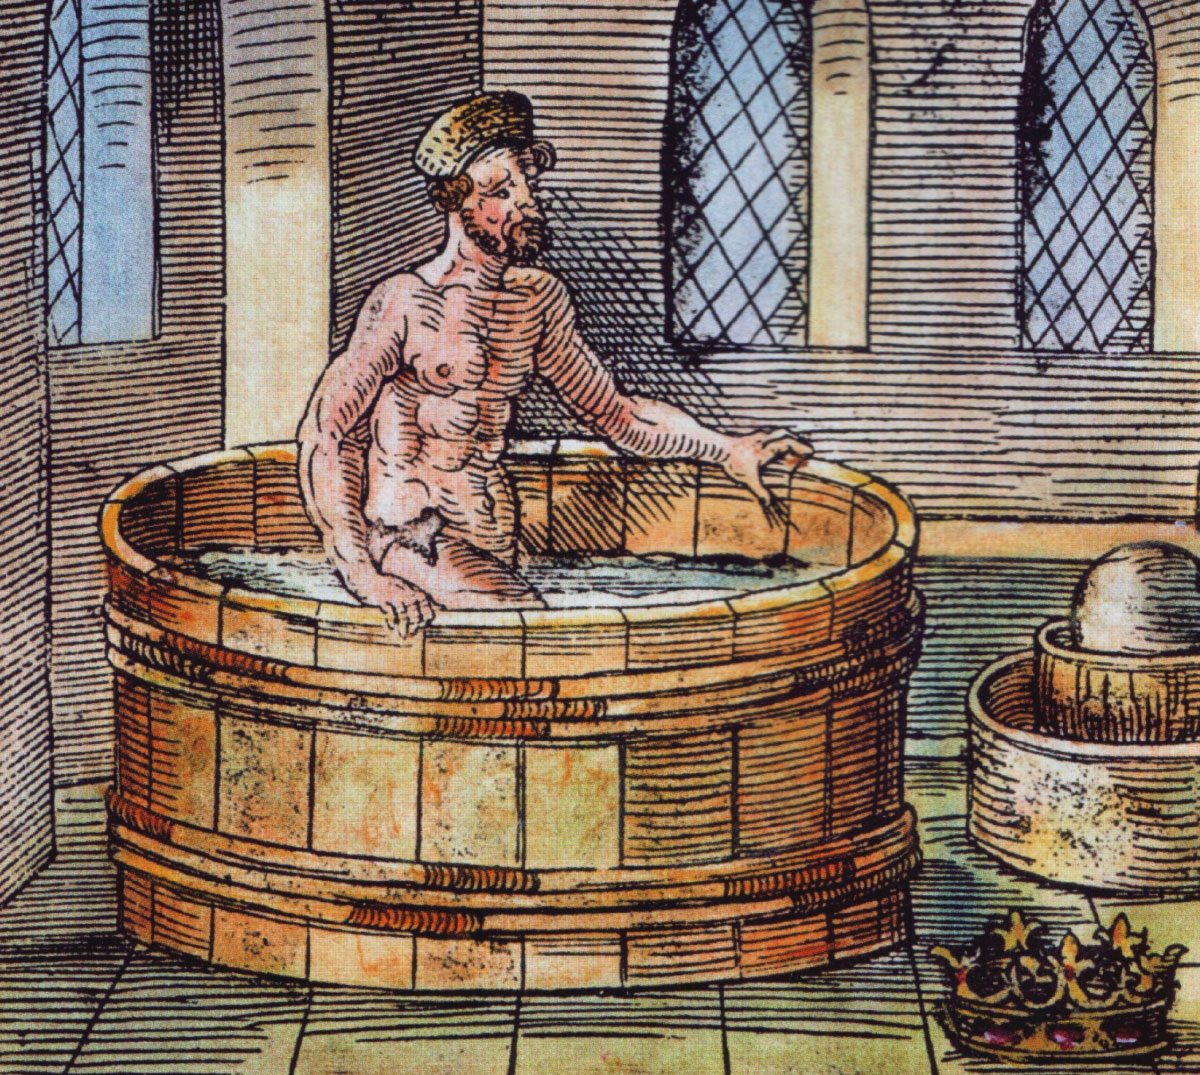  Archimedes: biografi, kehidupan, penemuan, dan trivia